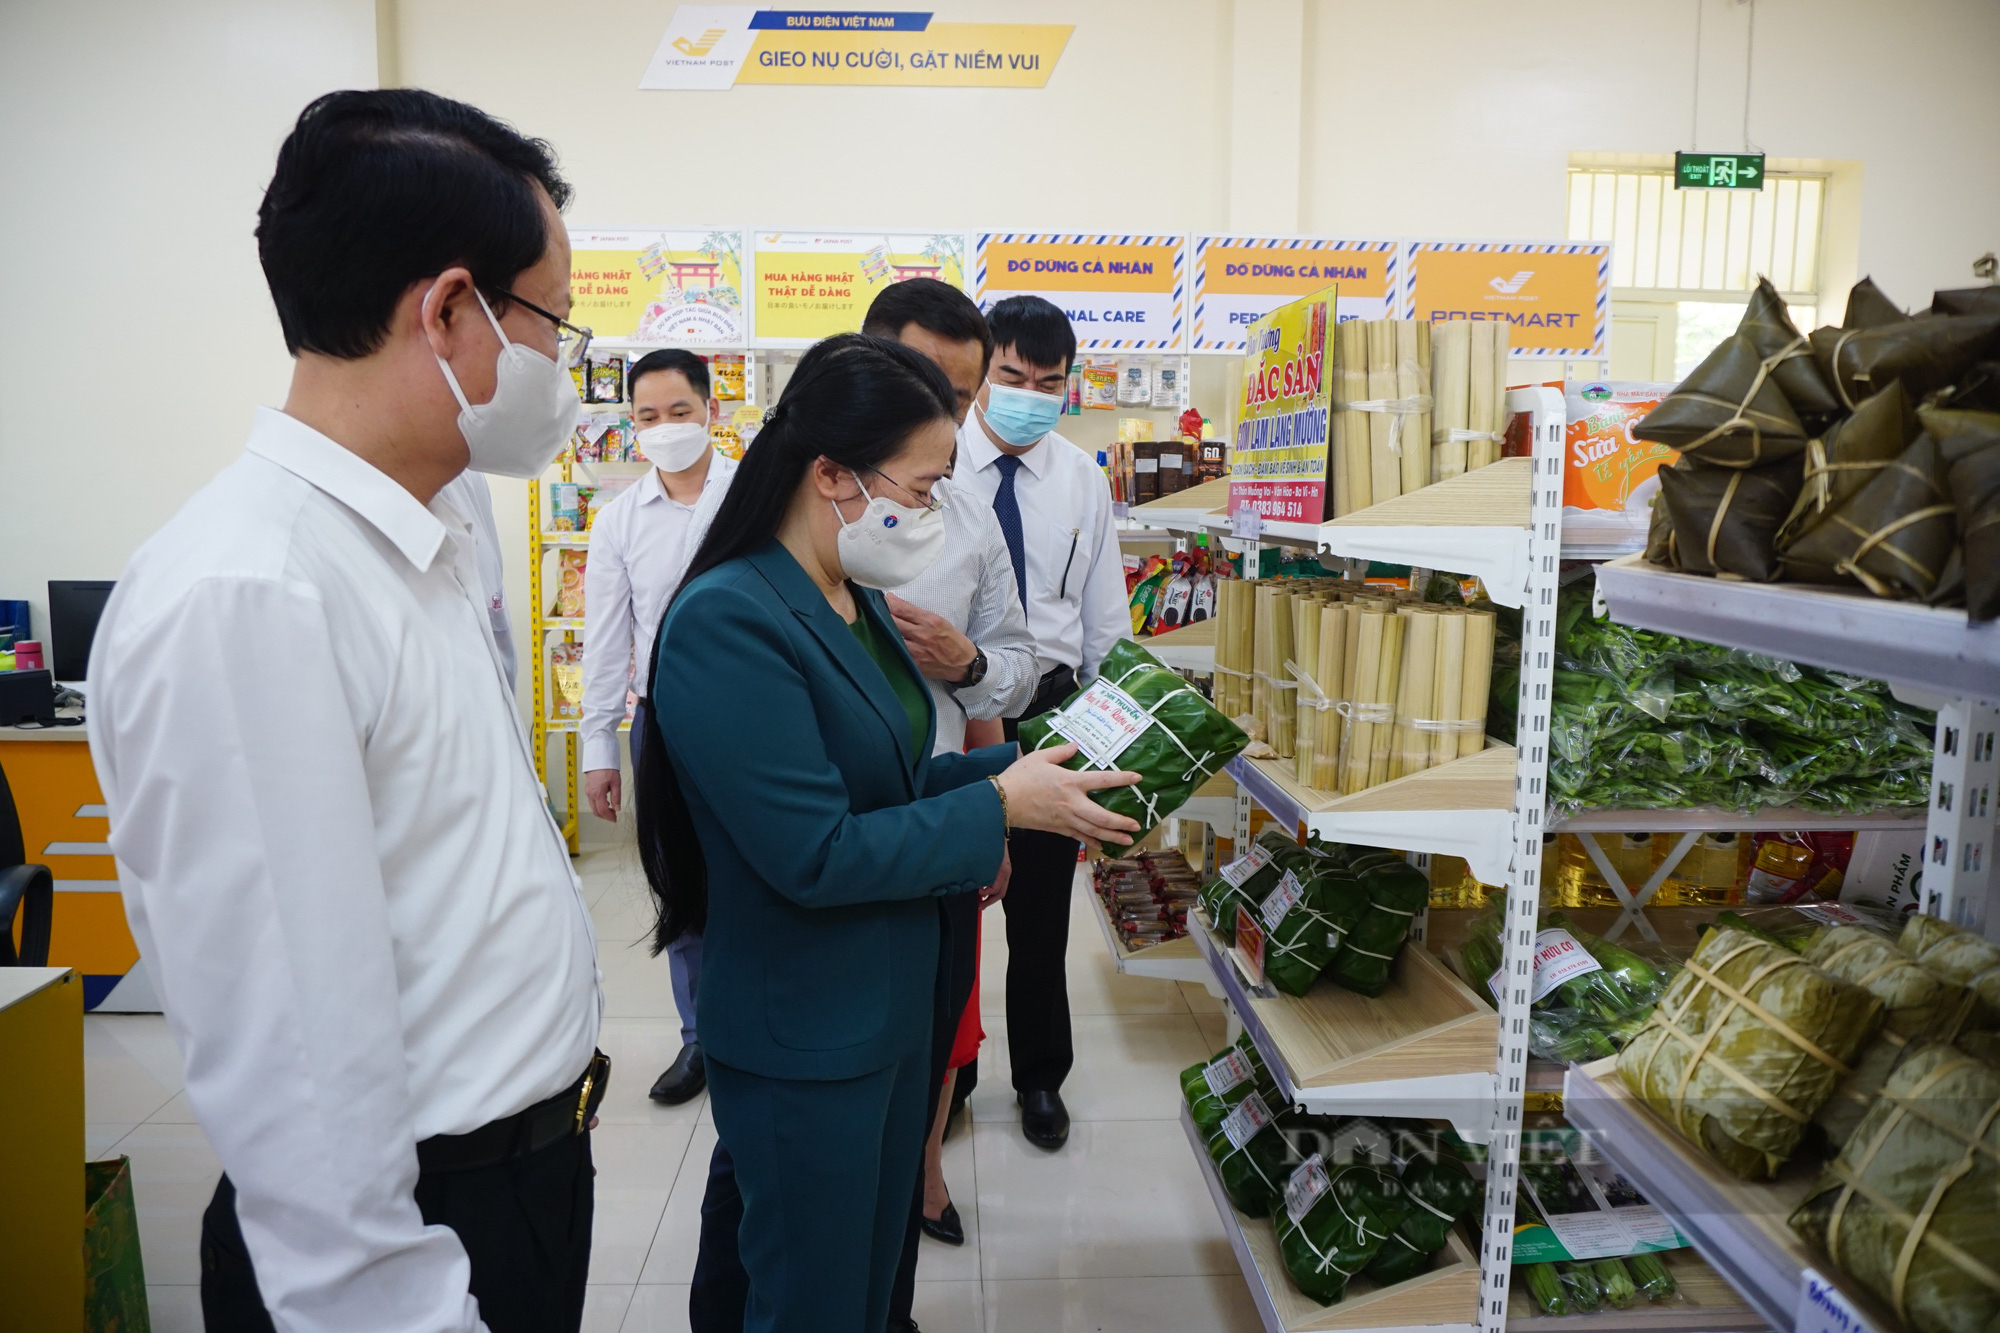 Hà Nội: Hội ND và Bưu điện khai trương gian hàng bán gà đồi, rau rừng và vô số nông sản đặc sản Ba Vì - Ảnh 4.